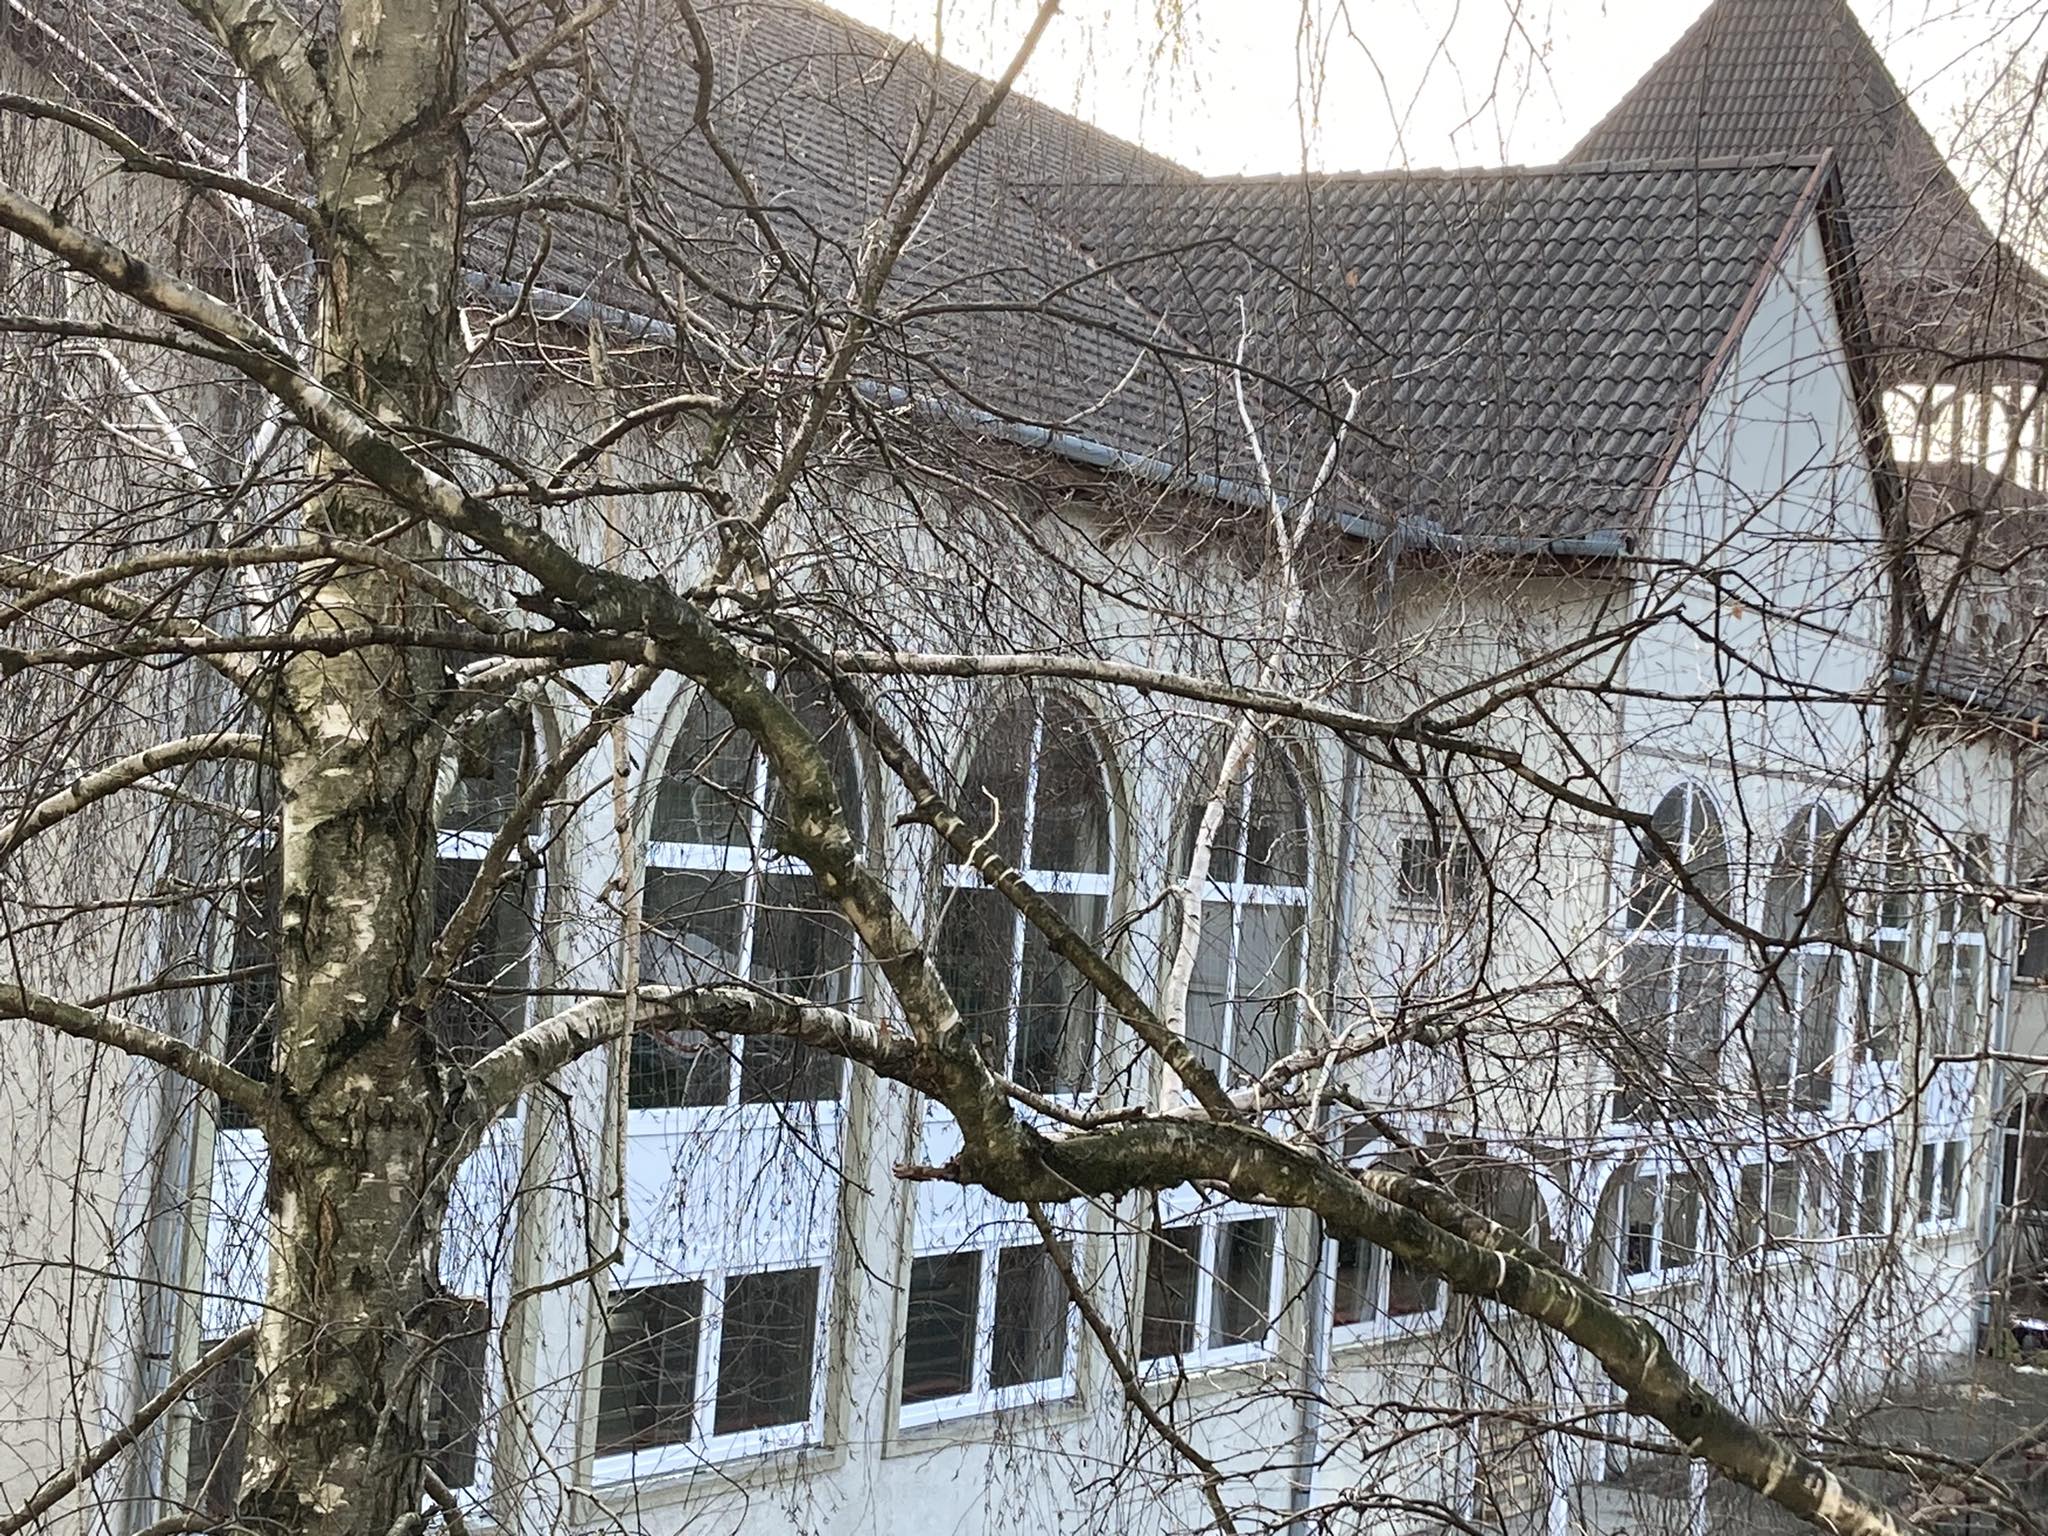 Egy csupasz fa összefonódott ágakkal részben akadályozza a kilátást egy régi épületre, boltíves ablakokkal és cseréptetővel. Az épület jó állapotúnak tűnik, a sűrű fiókhálózat mögött több ablak is látható.